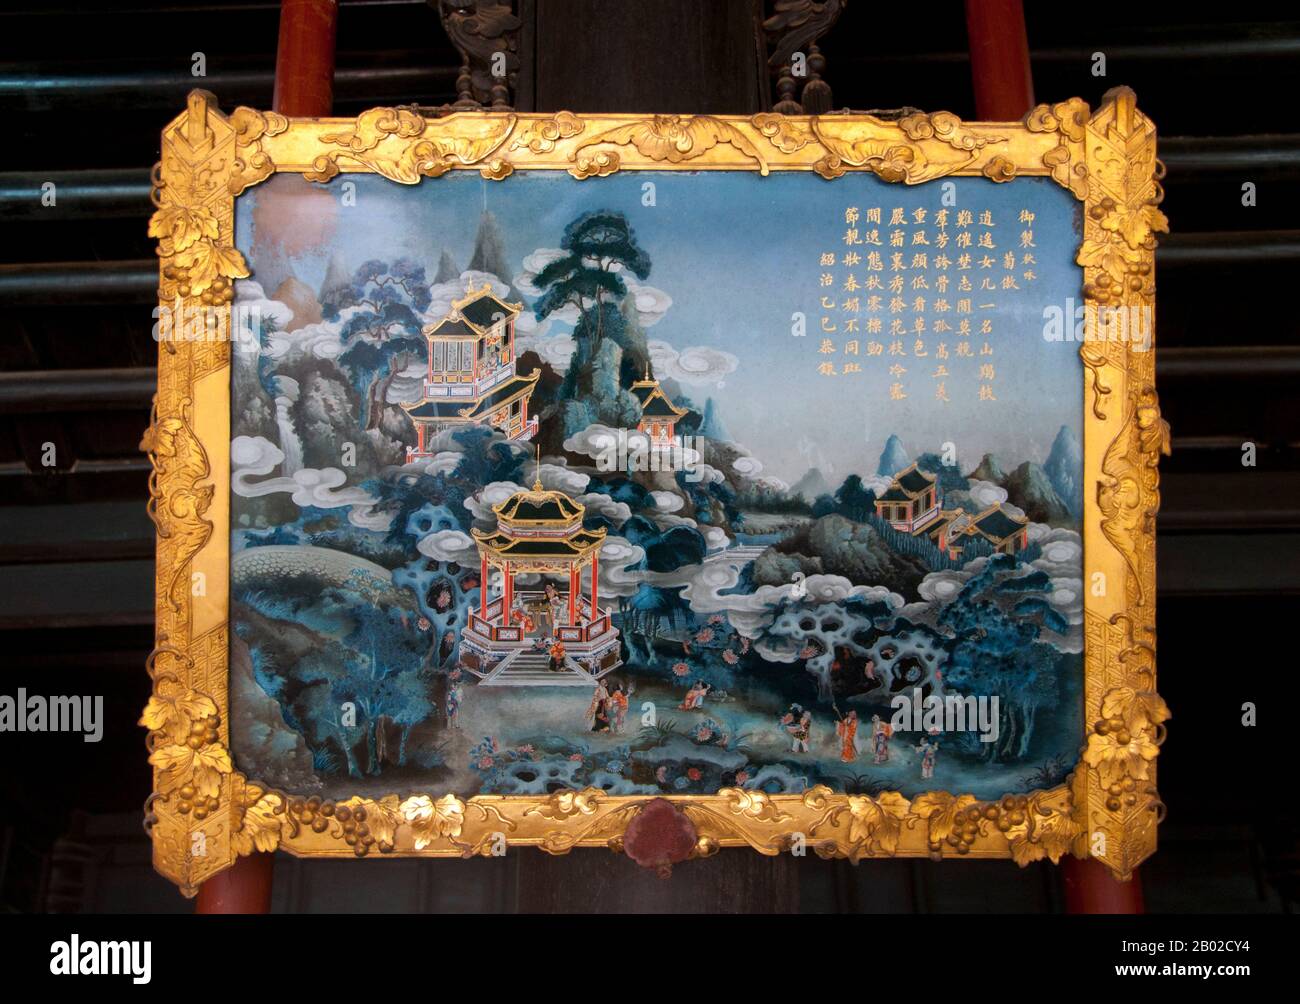 Vietnam : une peinture inversée sur verre dans le palais Hoa Khiem dans le parc de la tombe de l'empereur Tu Duc, Hué. La peinture inversée sur verre est une forme d'art consistant à appliquer de la peinture sur un morceau de verre, puis à visualiser l'image en retournant le verre et en regardant à travers le verre à l'image. L'empereur Tự Đức (22 septembre 1829 – 17 juillet 1883) (nom complet : Nguyễn Phúc Hồng Nhậm, également Nguyen Phuc Thi) est le quatrième empereur de la dynastie Nguyễn du Vietnam et règne de 1847 à 1883. Banque D'Images